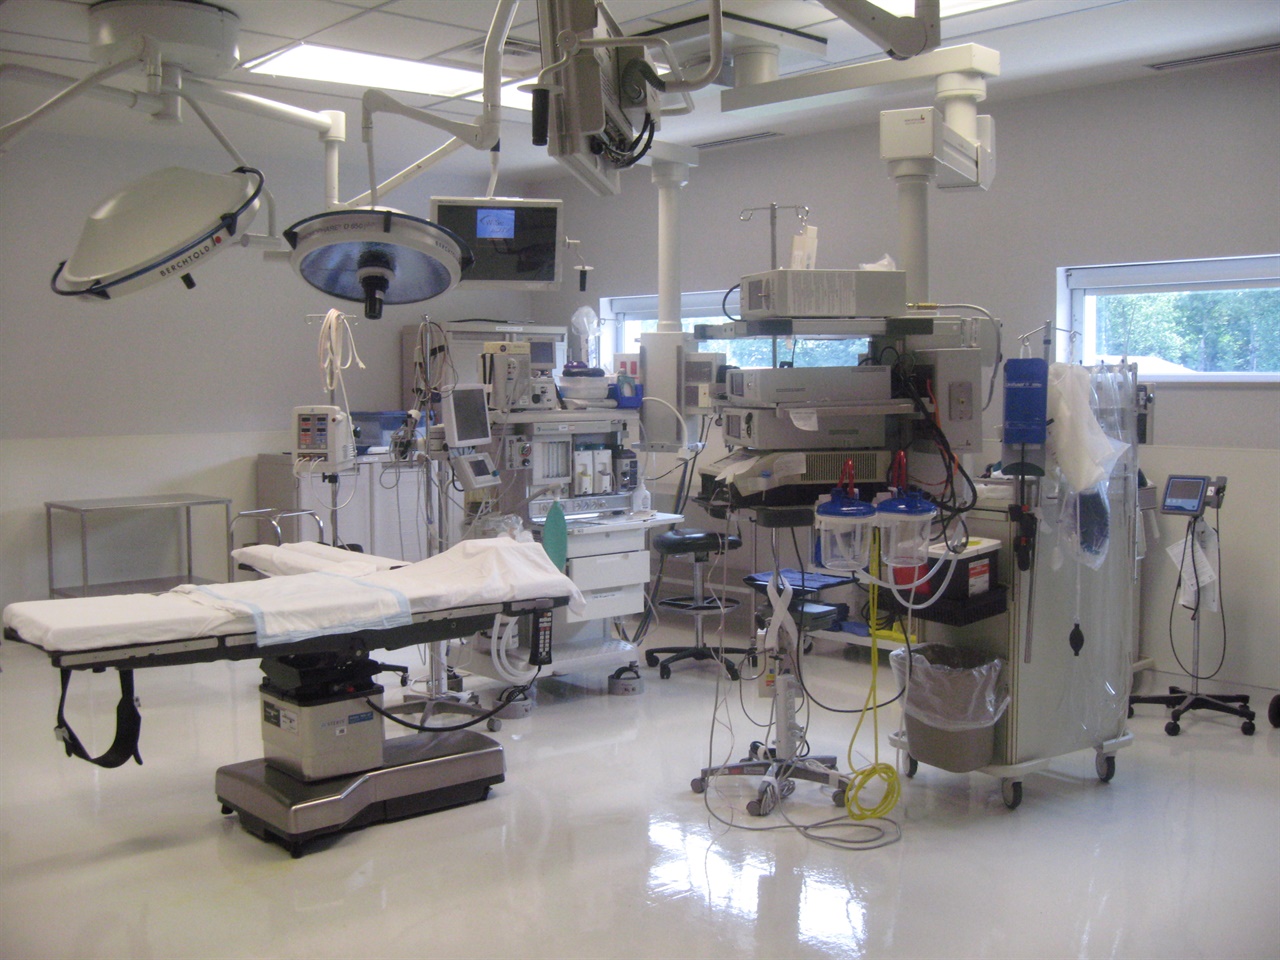 수술실 내부 병원은 30병상정도로 작지만 상시근무 마취과 의사 및 각종 X선 촬영장비와 수술실을 현대적으로 갖추었음(자료사진, 기사 내용과 무관)